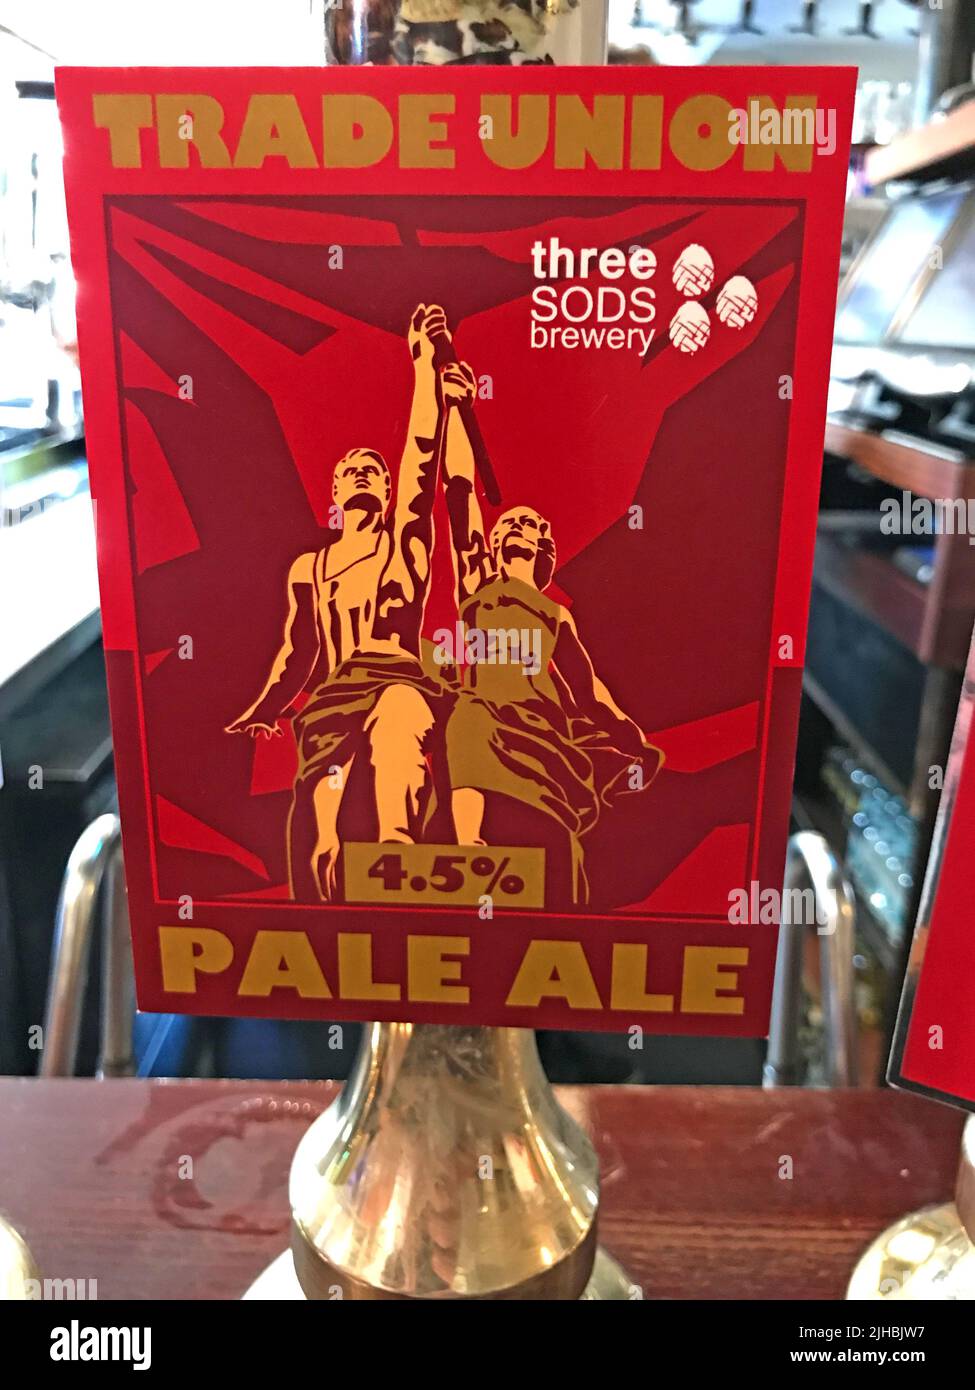 Trade Union Pale Ale, de la brasserie Three SODS, Handpull cask ale, idéal pour les travailleurs en grève, au bar de Kings Arms, Waterloo, Londres Banque D'Images